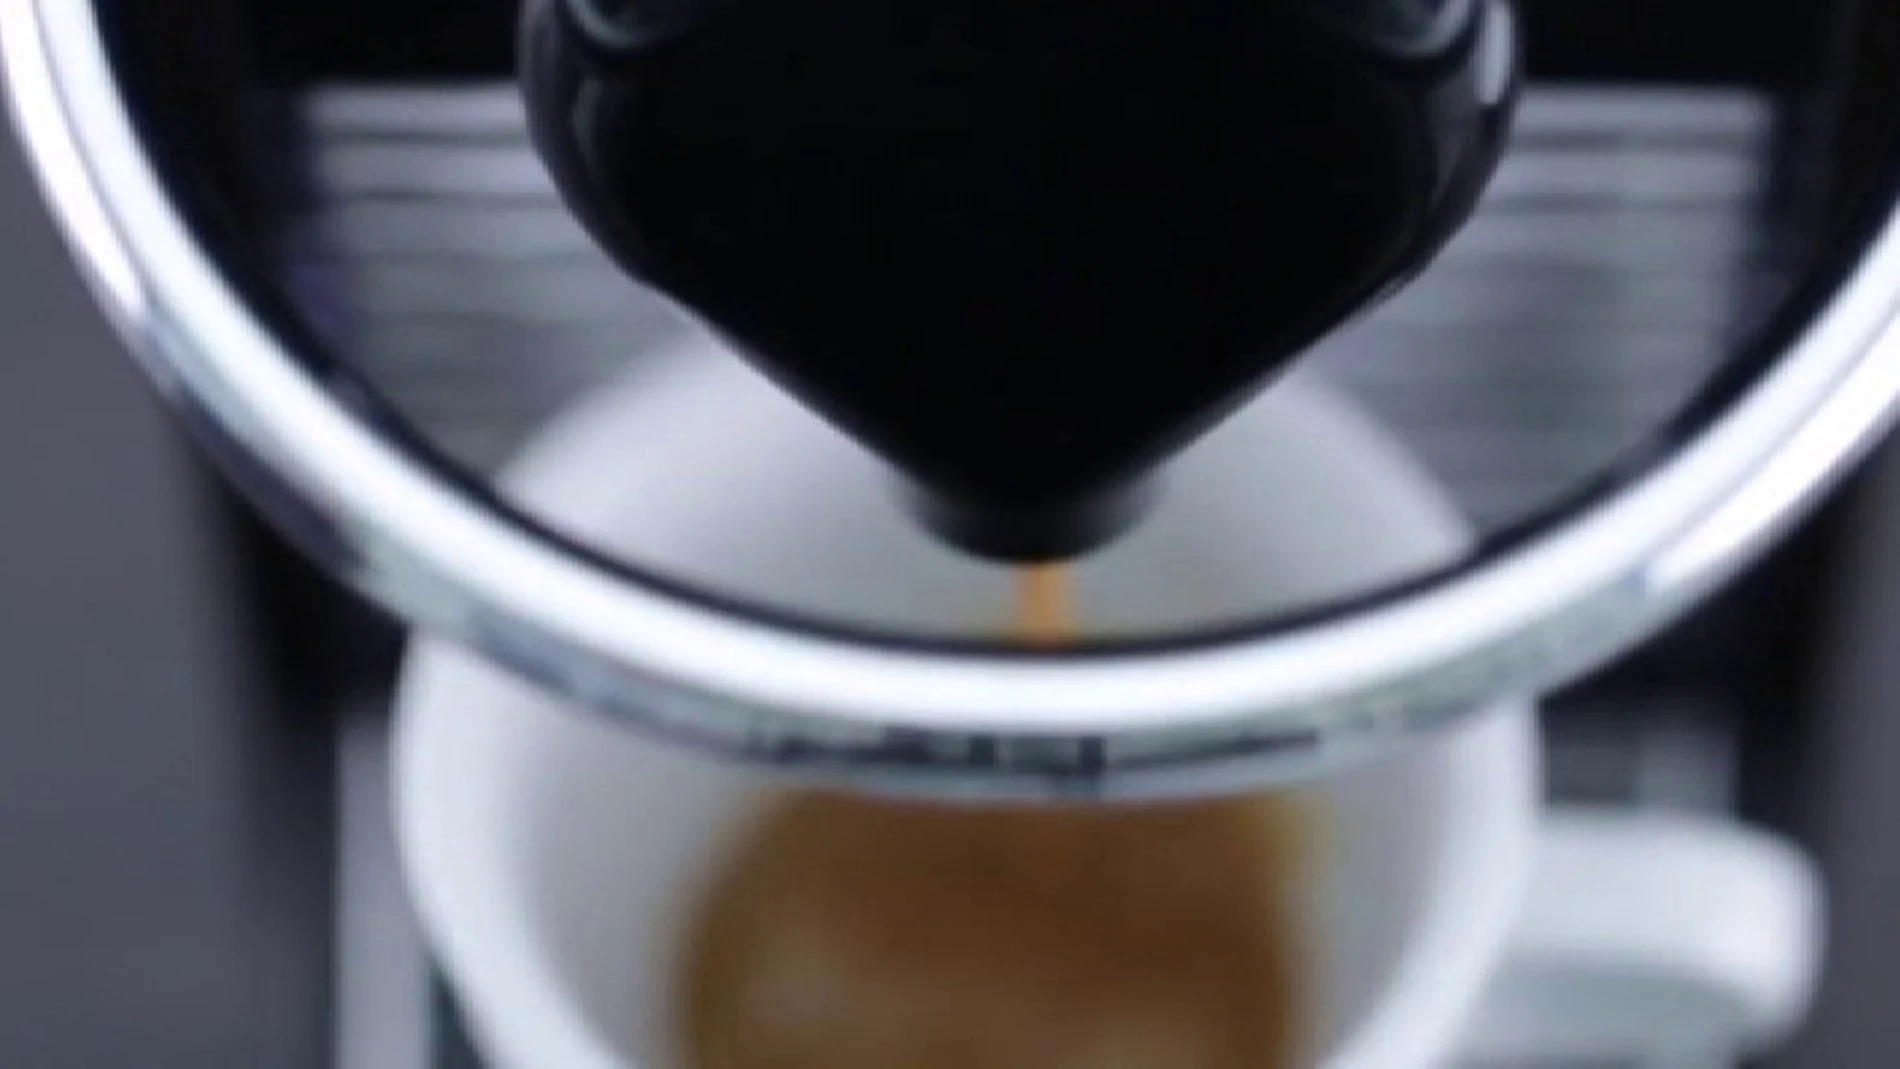 Baleares plantea prohibir las cápsulas de café en el 2020